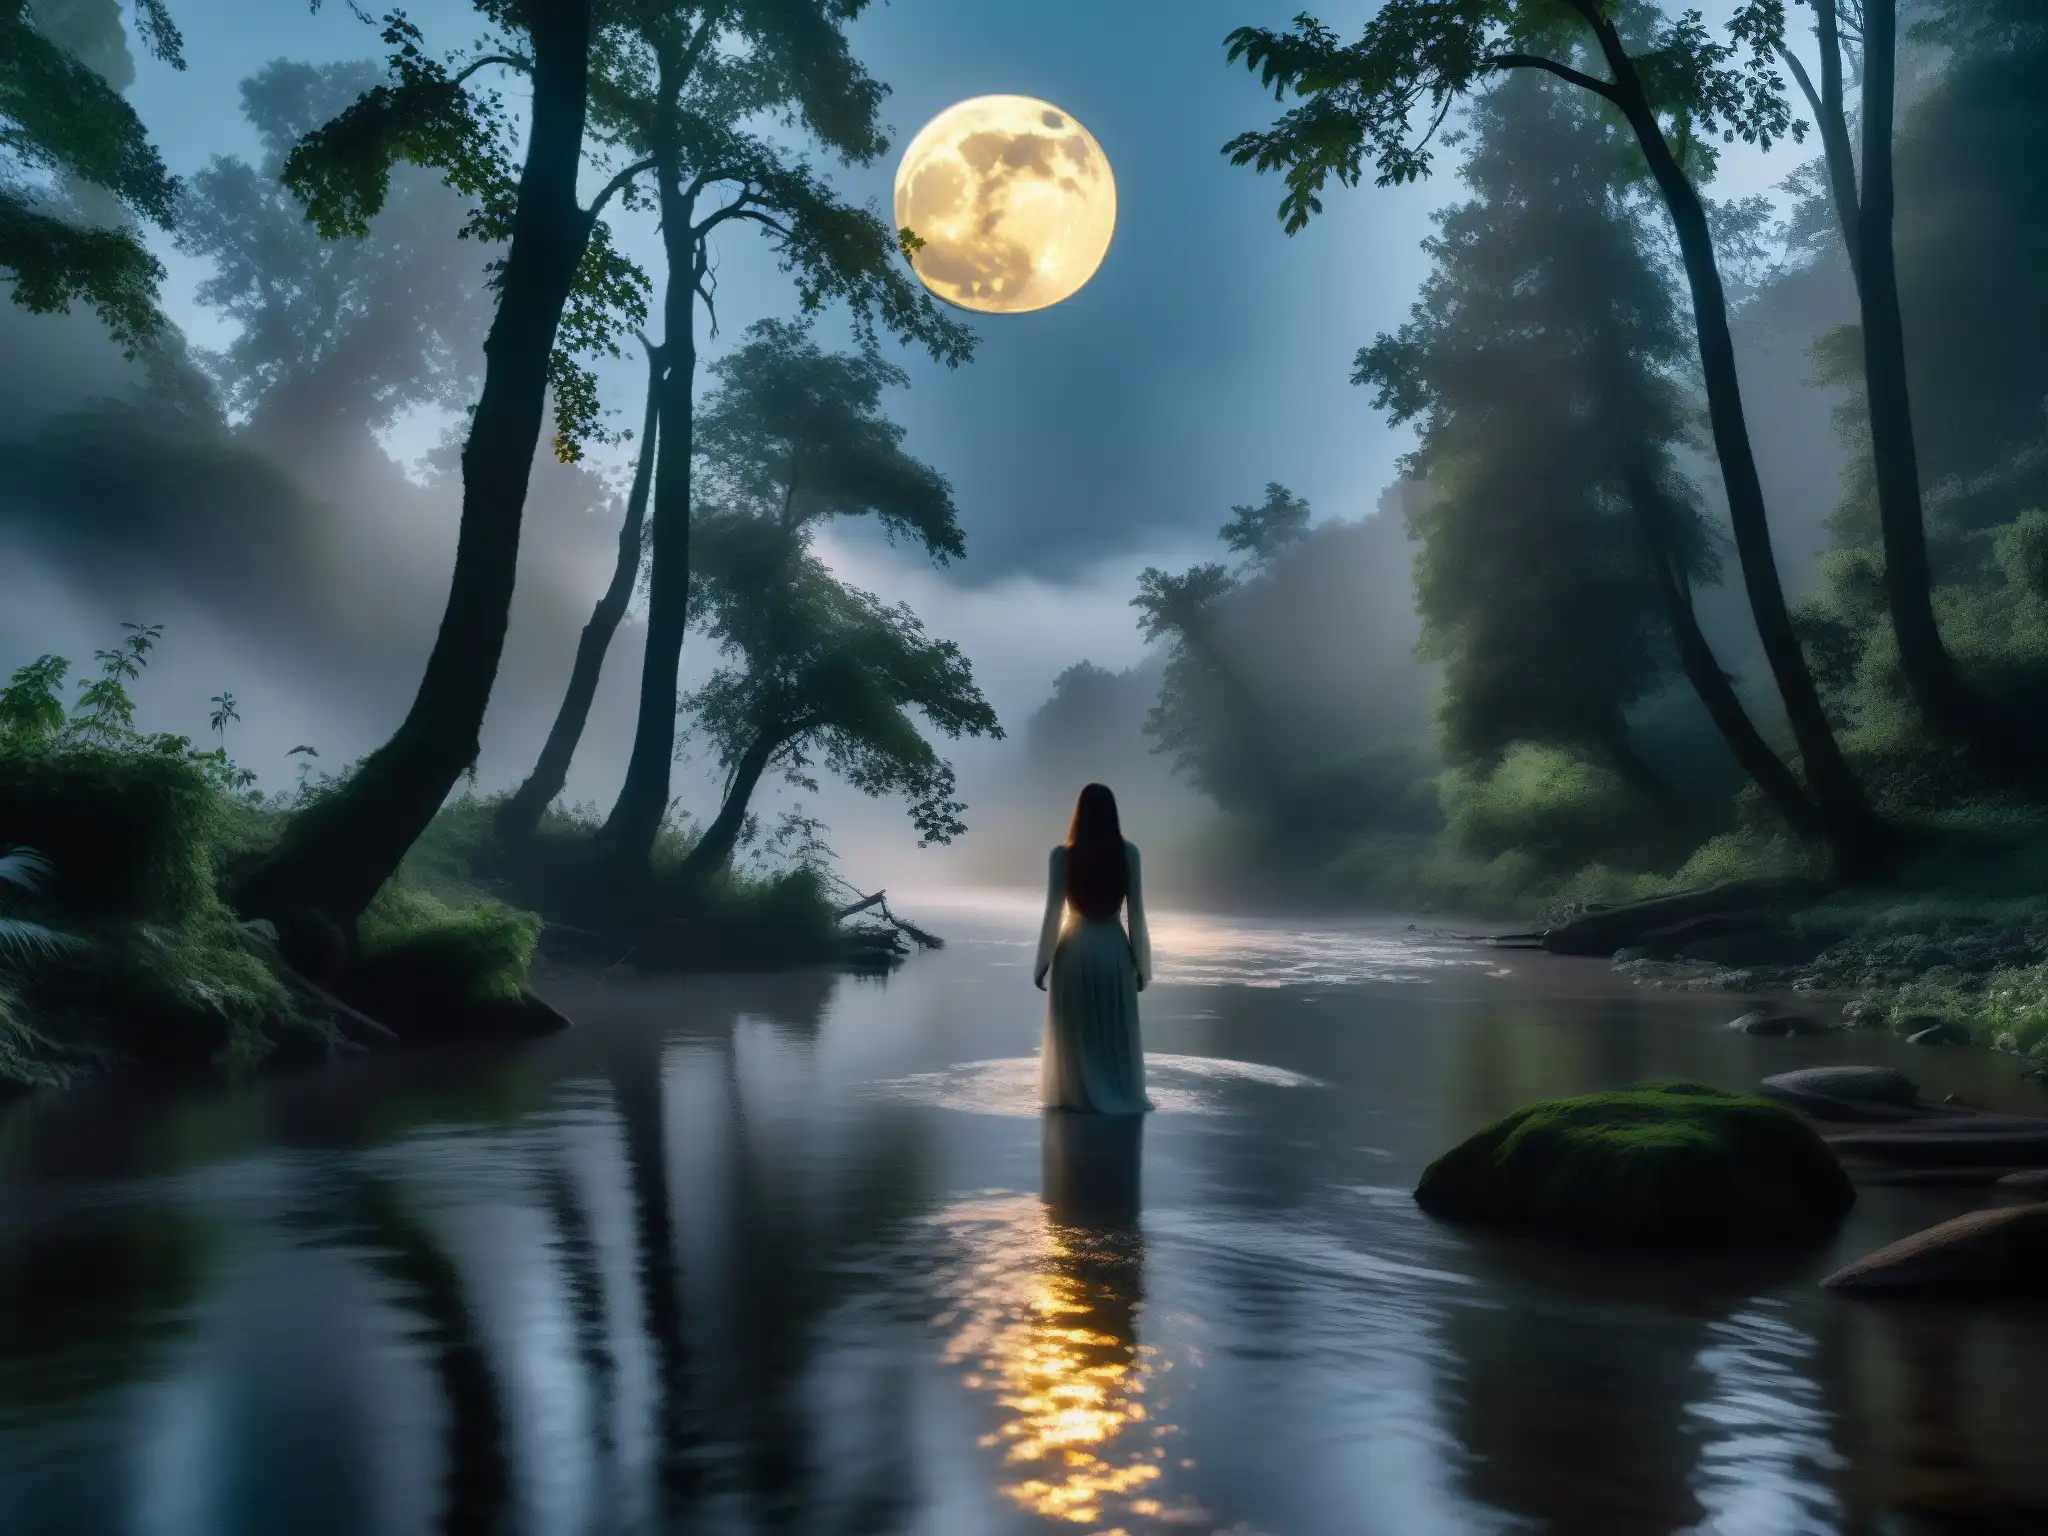 Imagen impactante de un río iluminado por la luna en un denso bosque, con una figura fantasmal en la orilla, evocando la leyenda de La Llorona